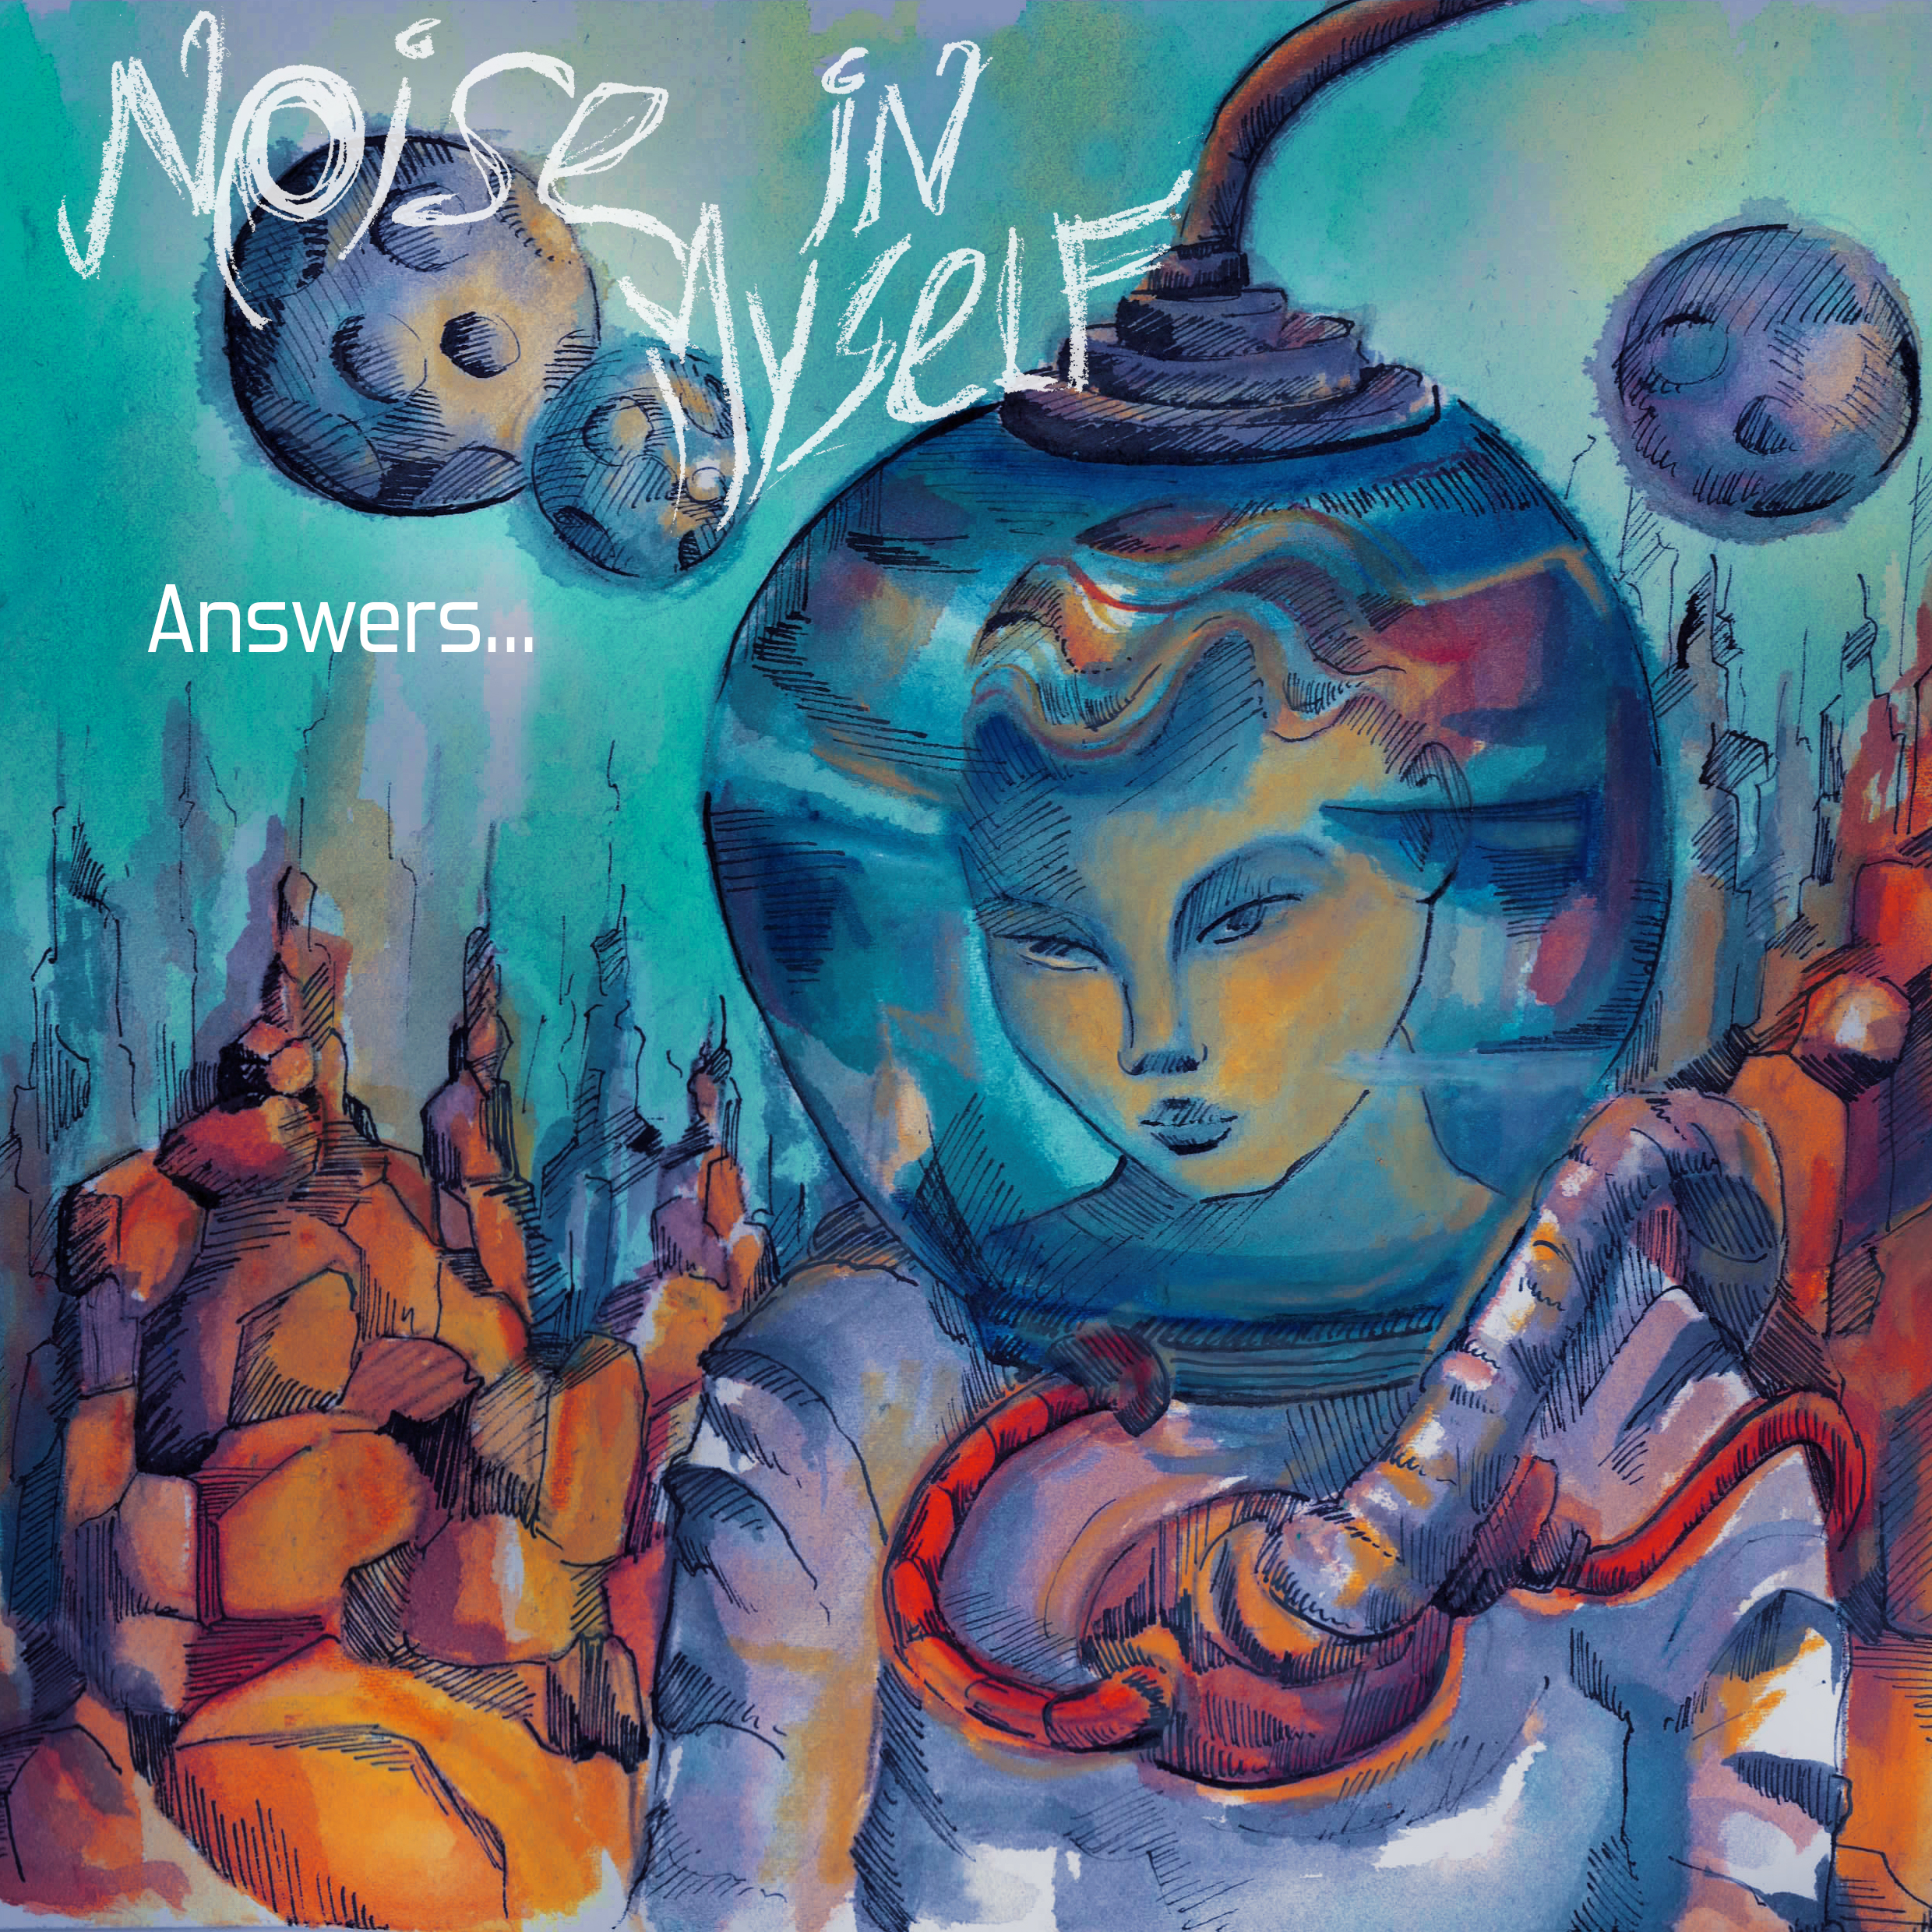 Il concept EP sullo spazio dei Noise in Myself, ascolta ora “Answers”